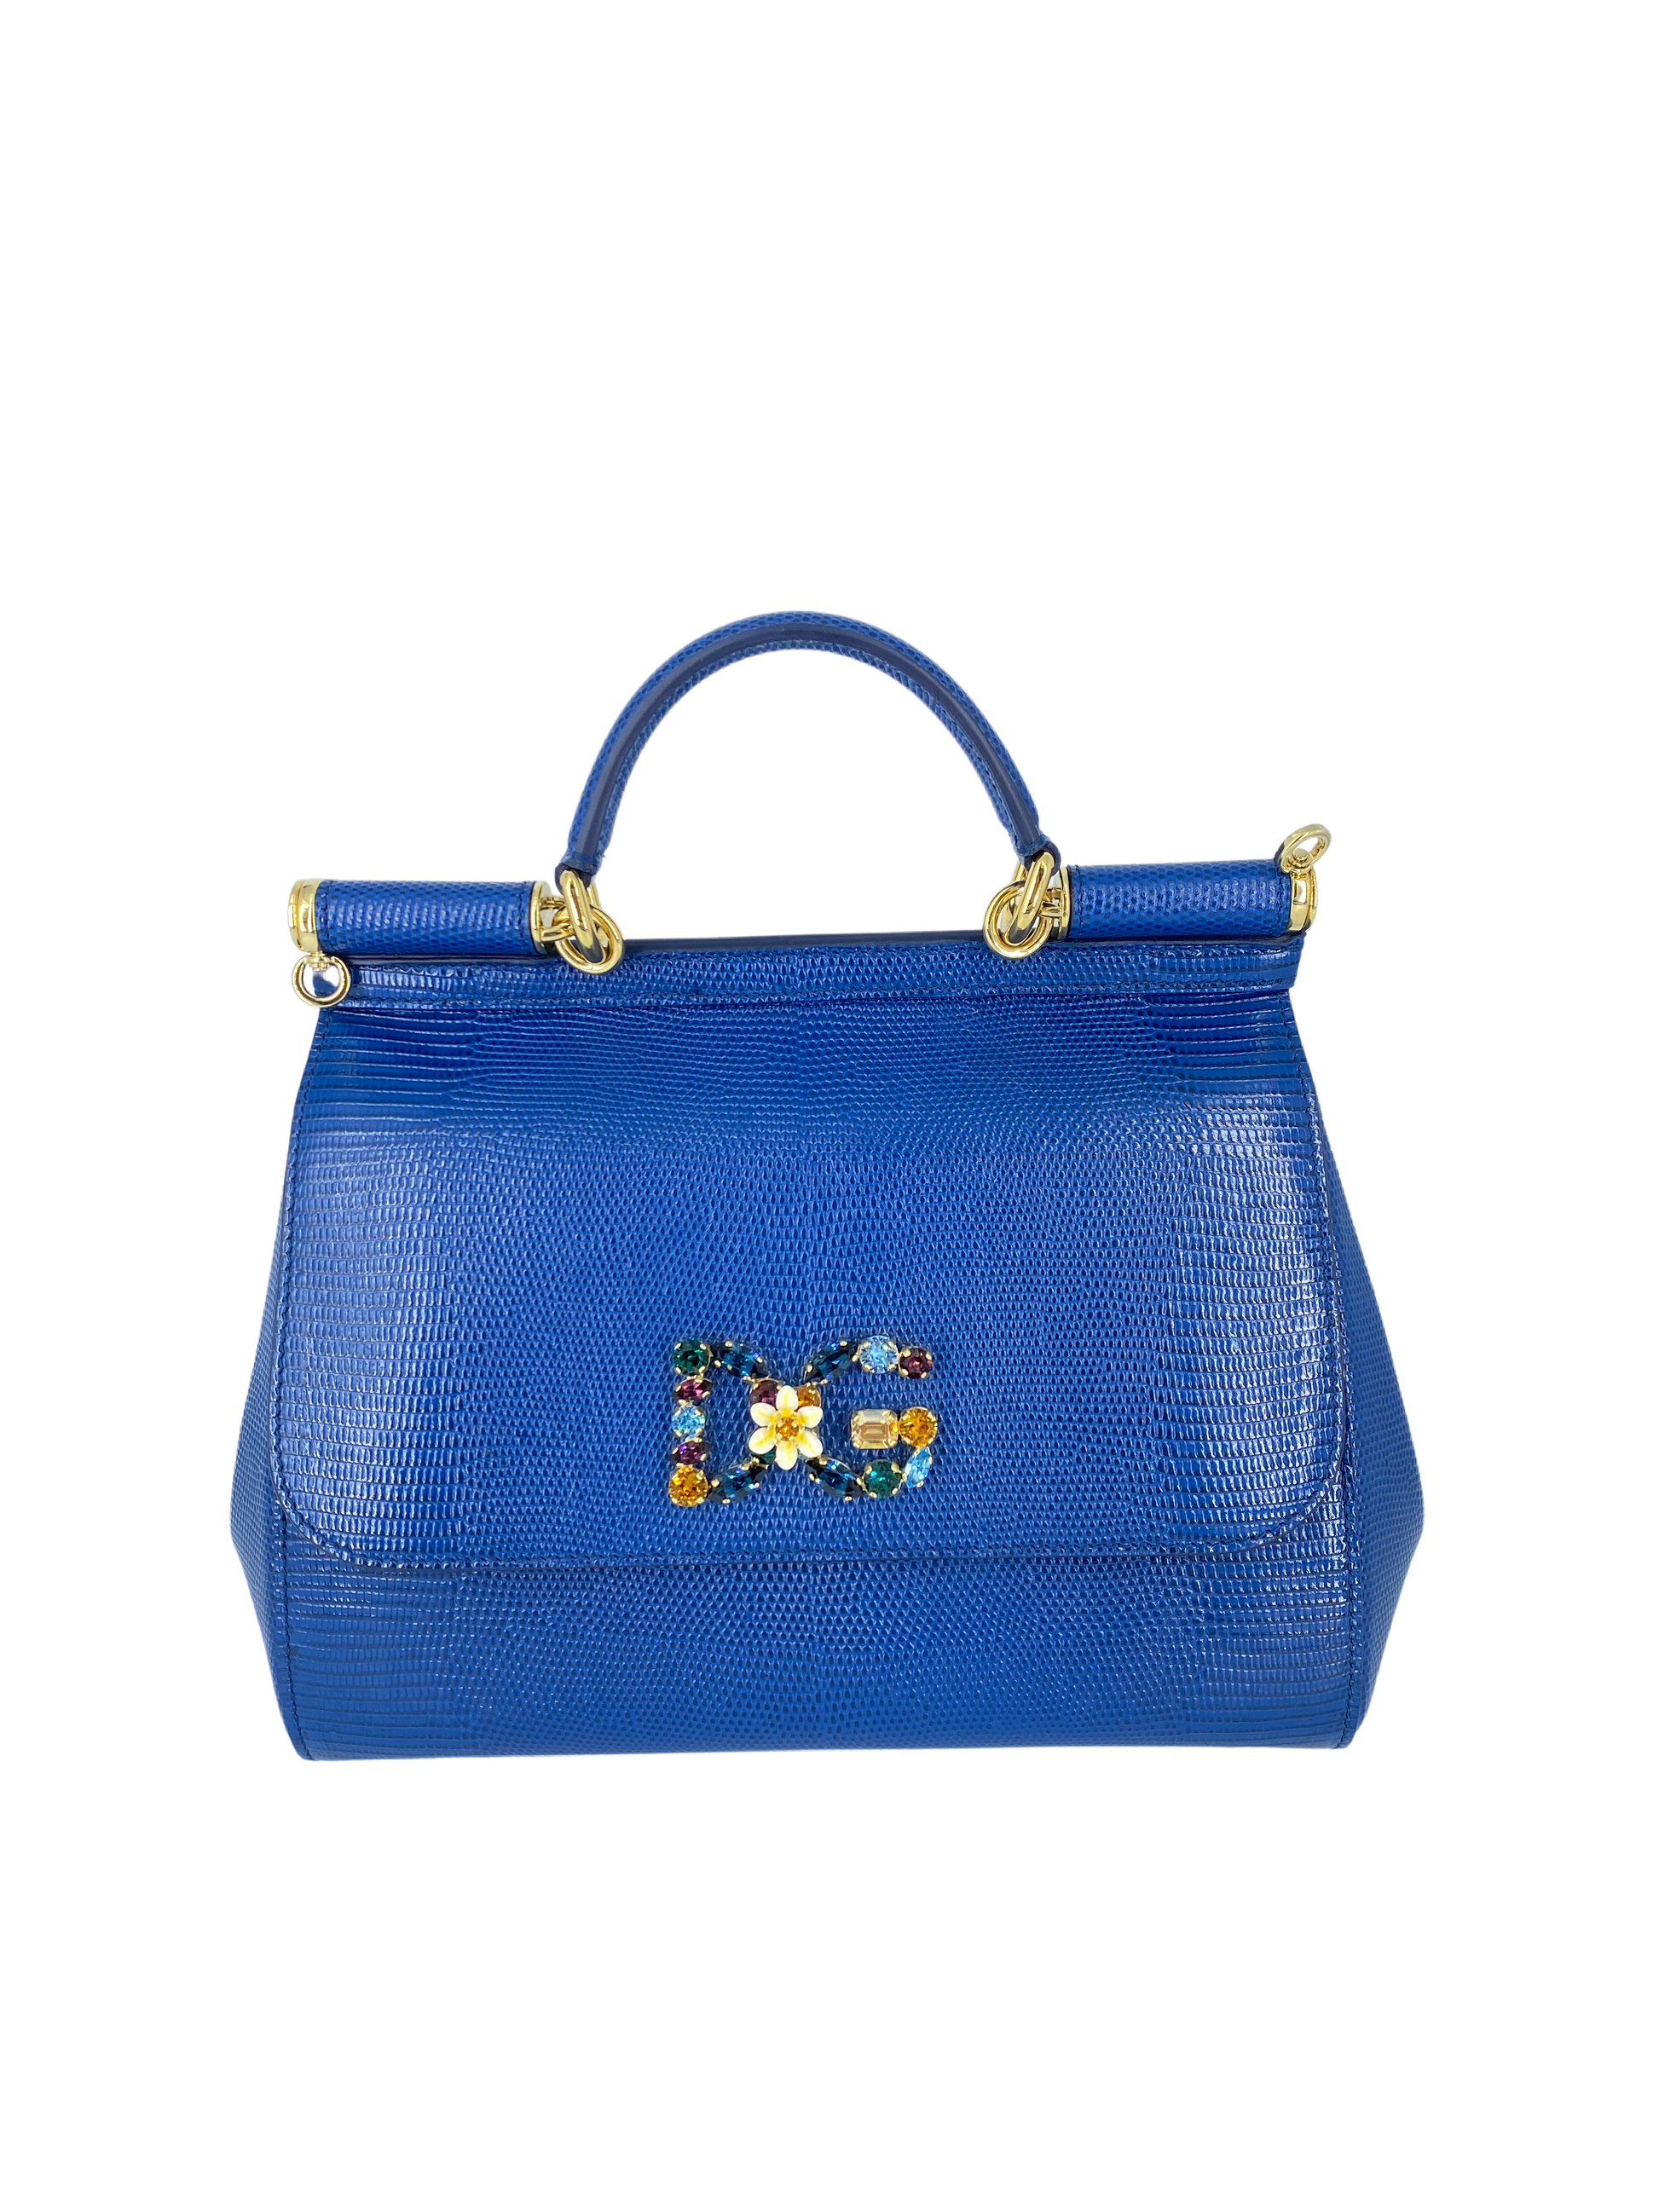 DOLCE AND GABBANA Dolce & Gabbana Royal Blue Bag